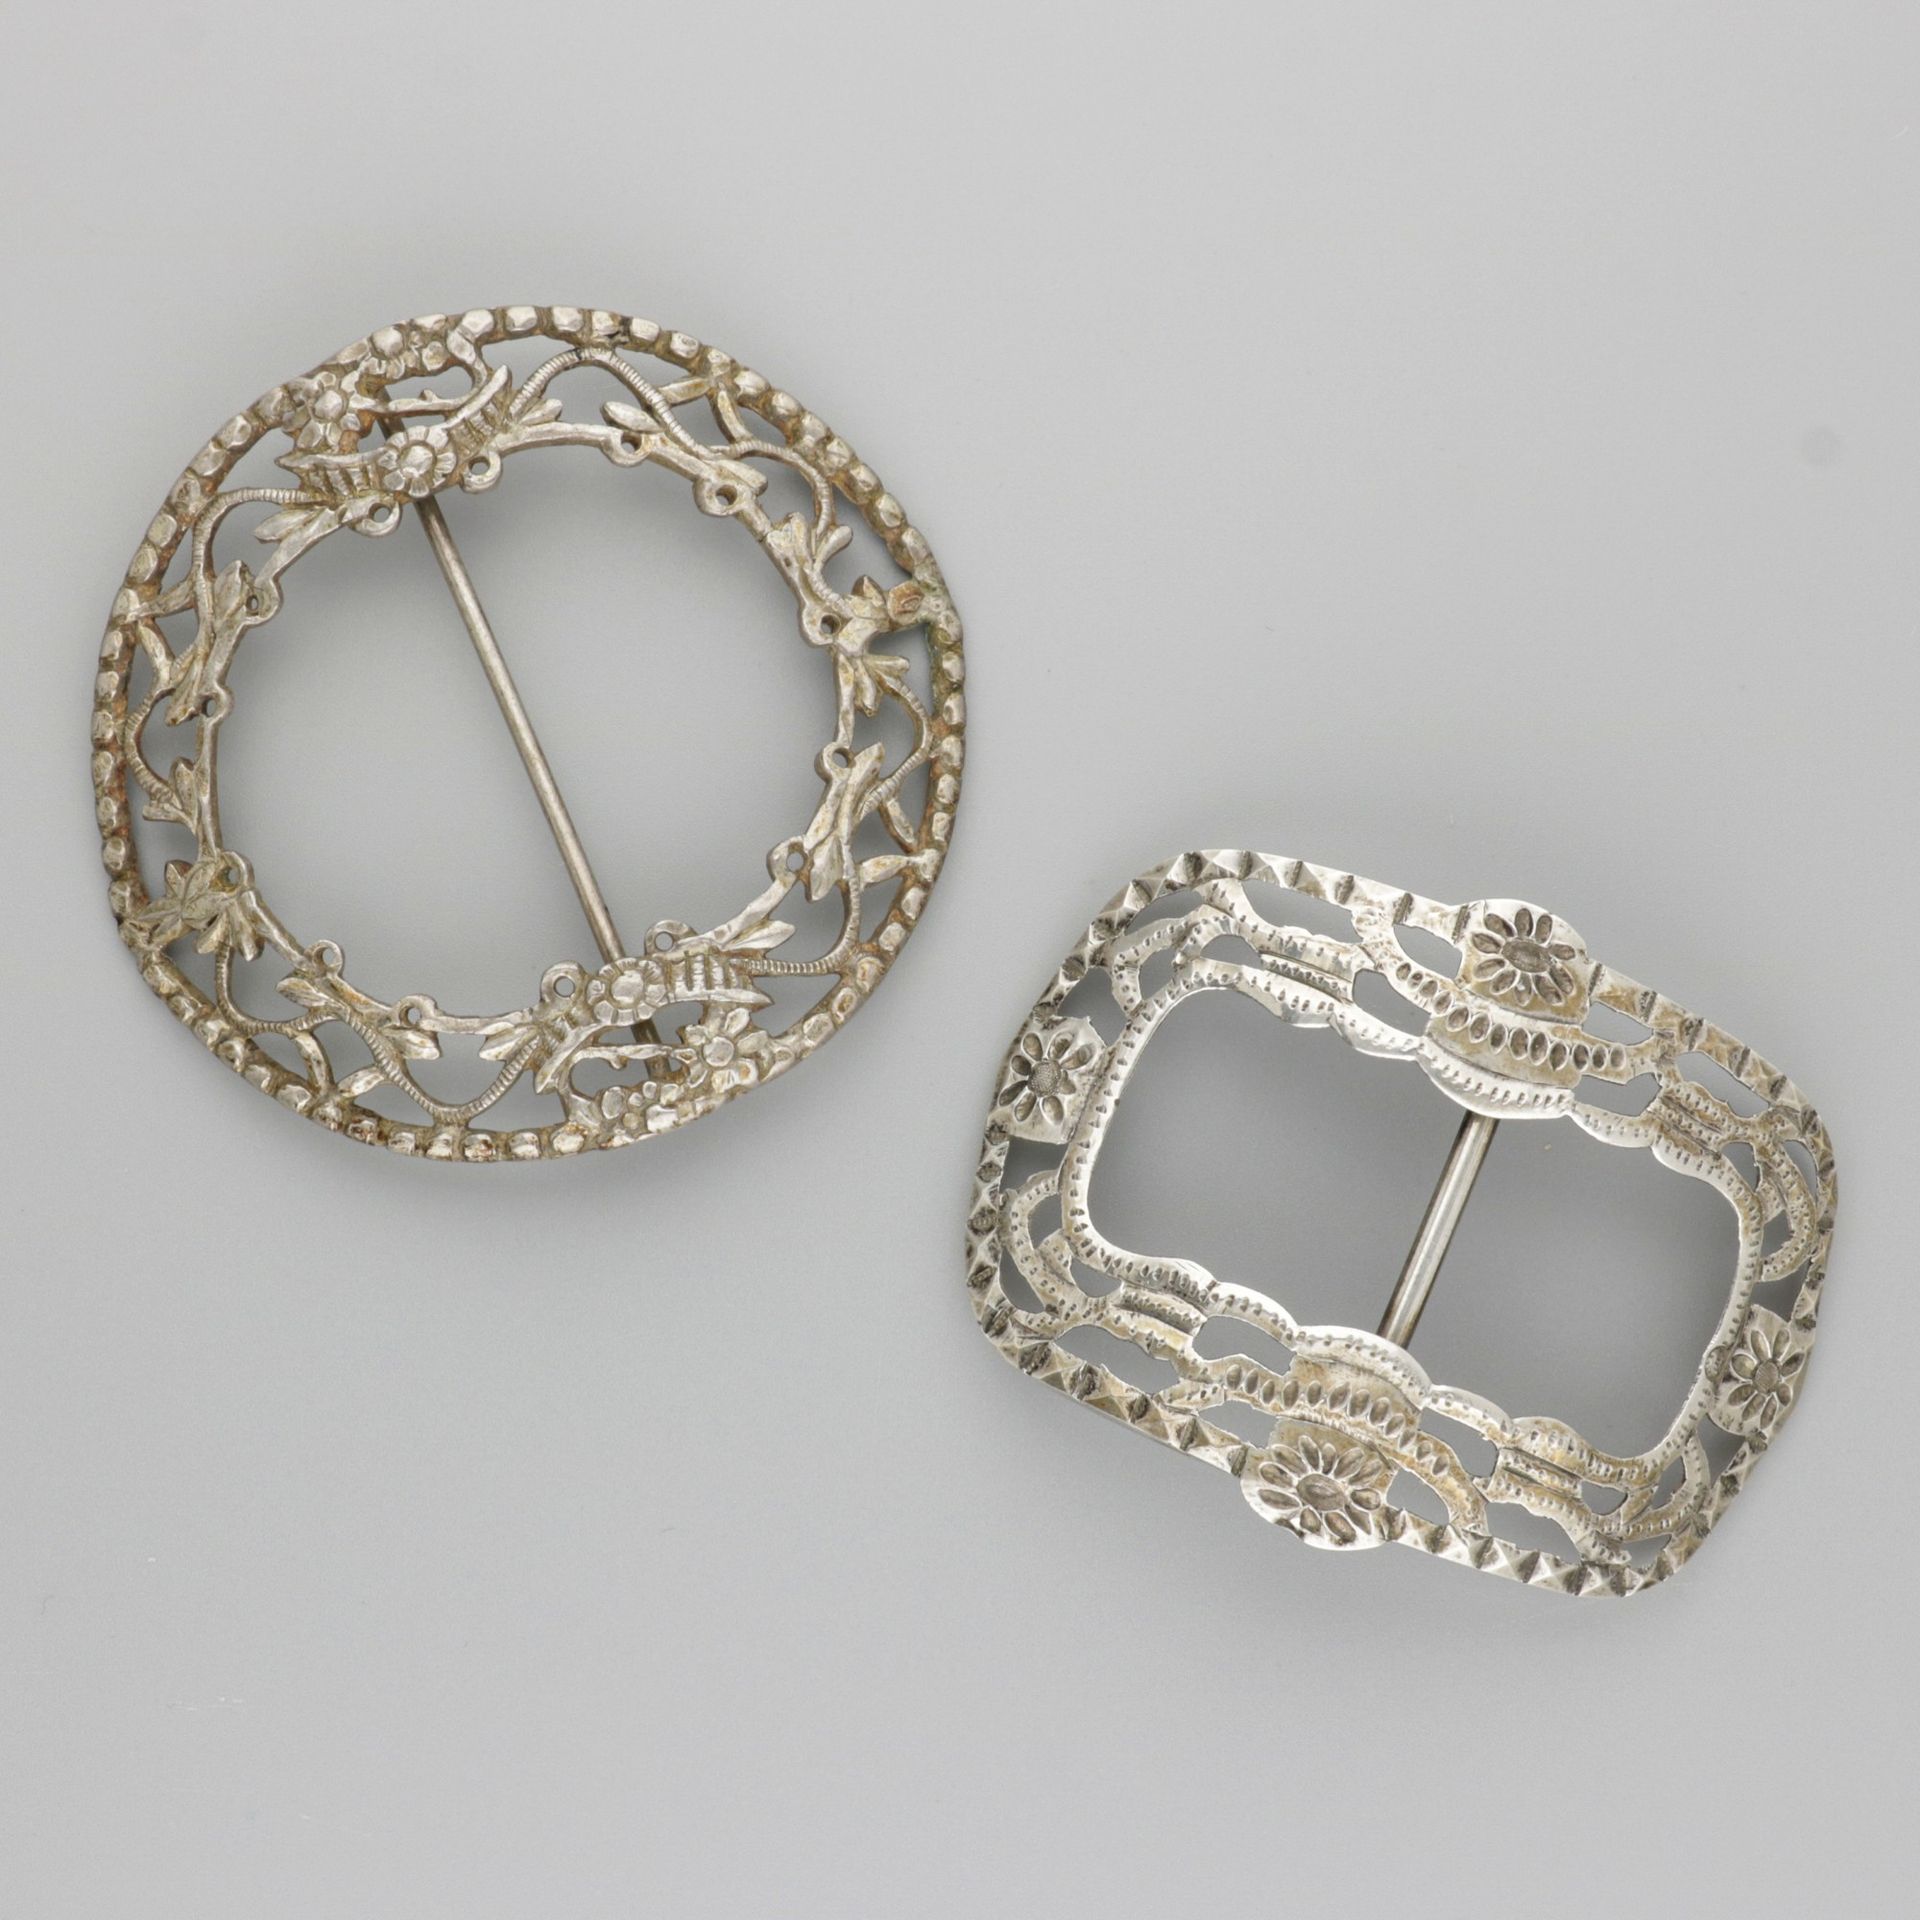 2-piece lot buckles silver. Modelo redondo y rectangular con decoraciones moldea&hellip;